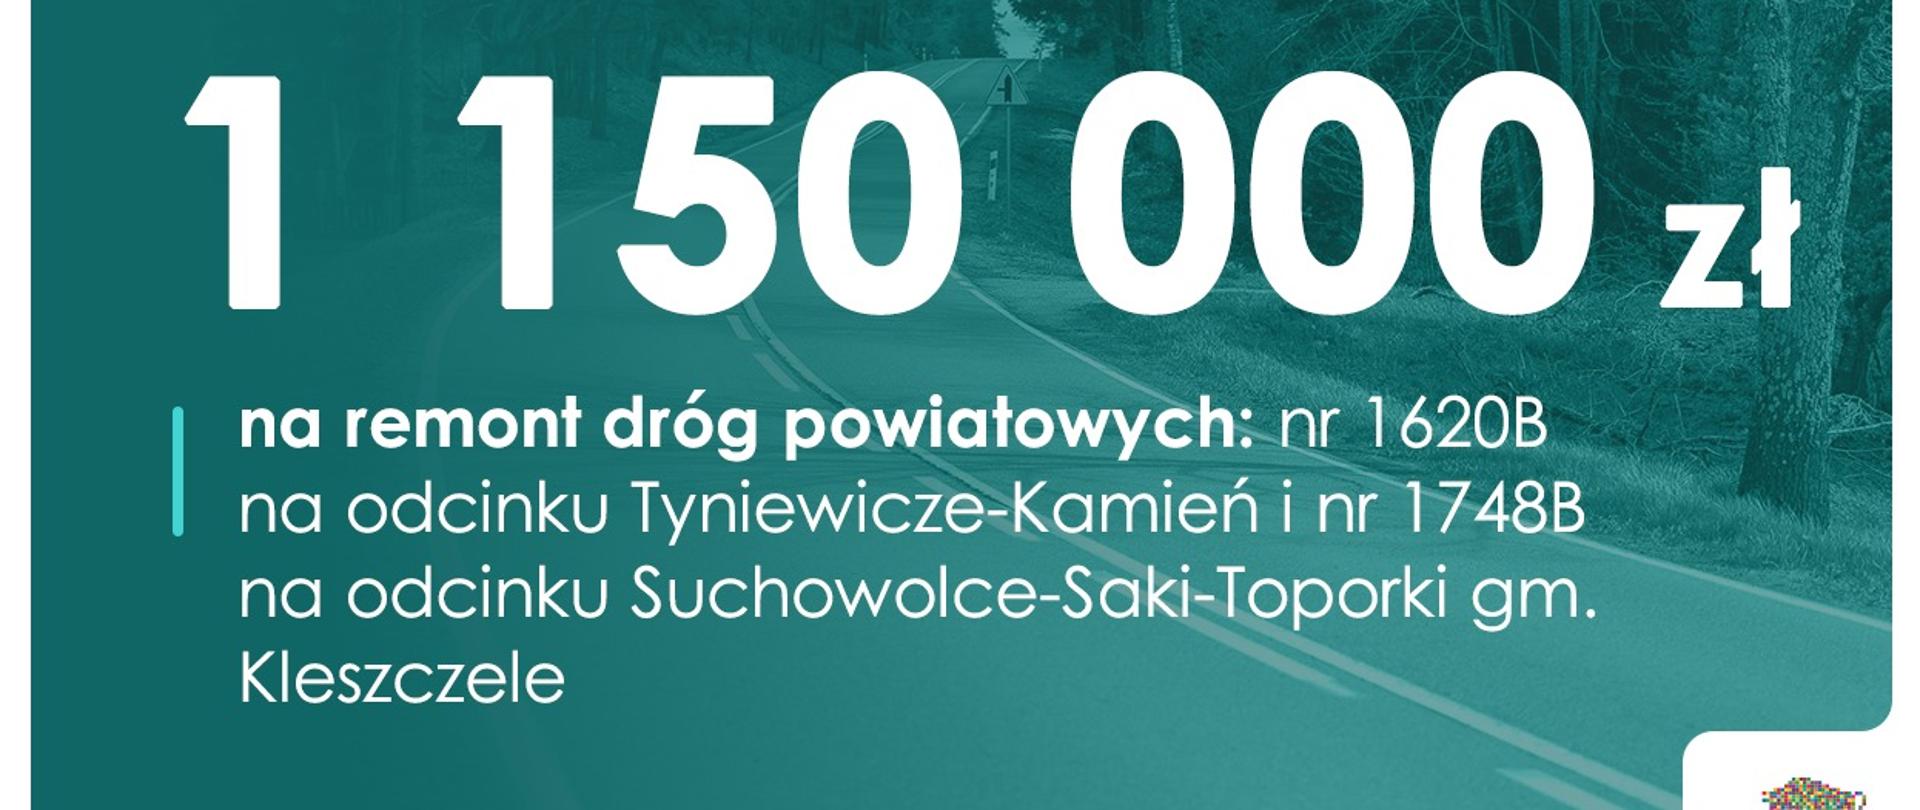 1150 000,00 na remont dróg powiatowych nr 1620B na odcinku Tyniewicze - Kamień i nr 1748B na odcinku Suchowolce - Saki - Toporki gm. Kleszczele